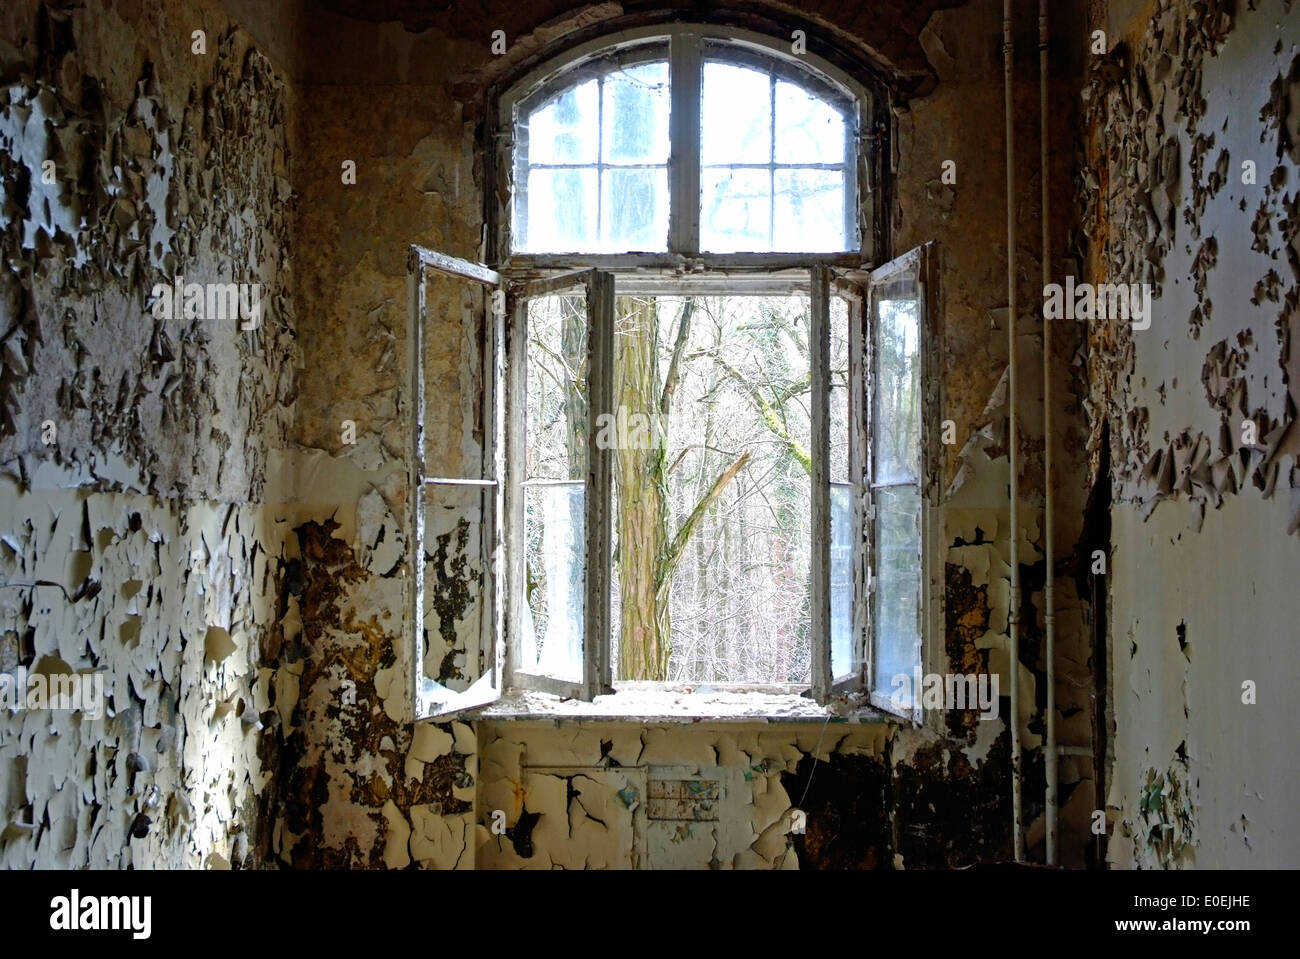 Offene Fenster In Einem Heruntergekommenen Gebaude Stockfotografie Alamy